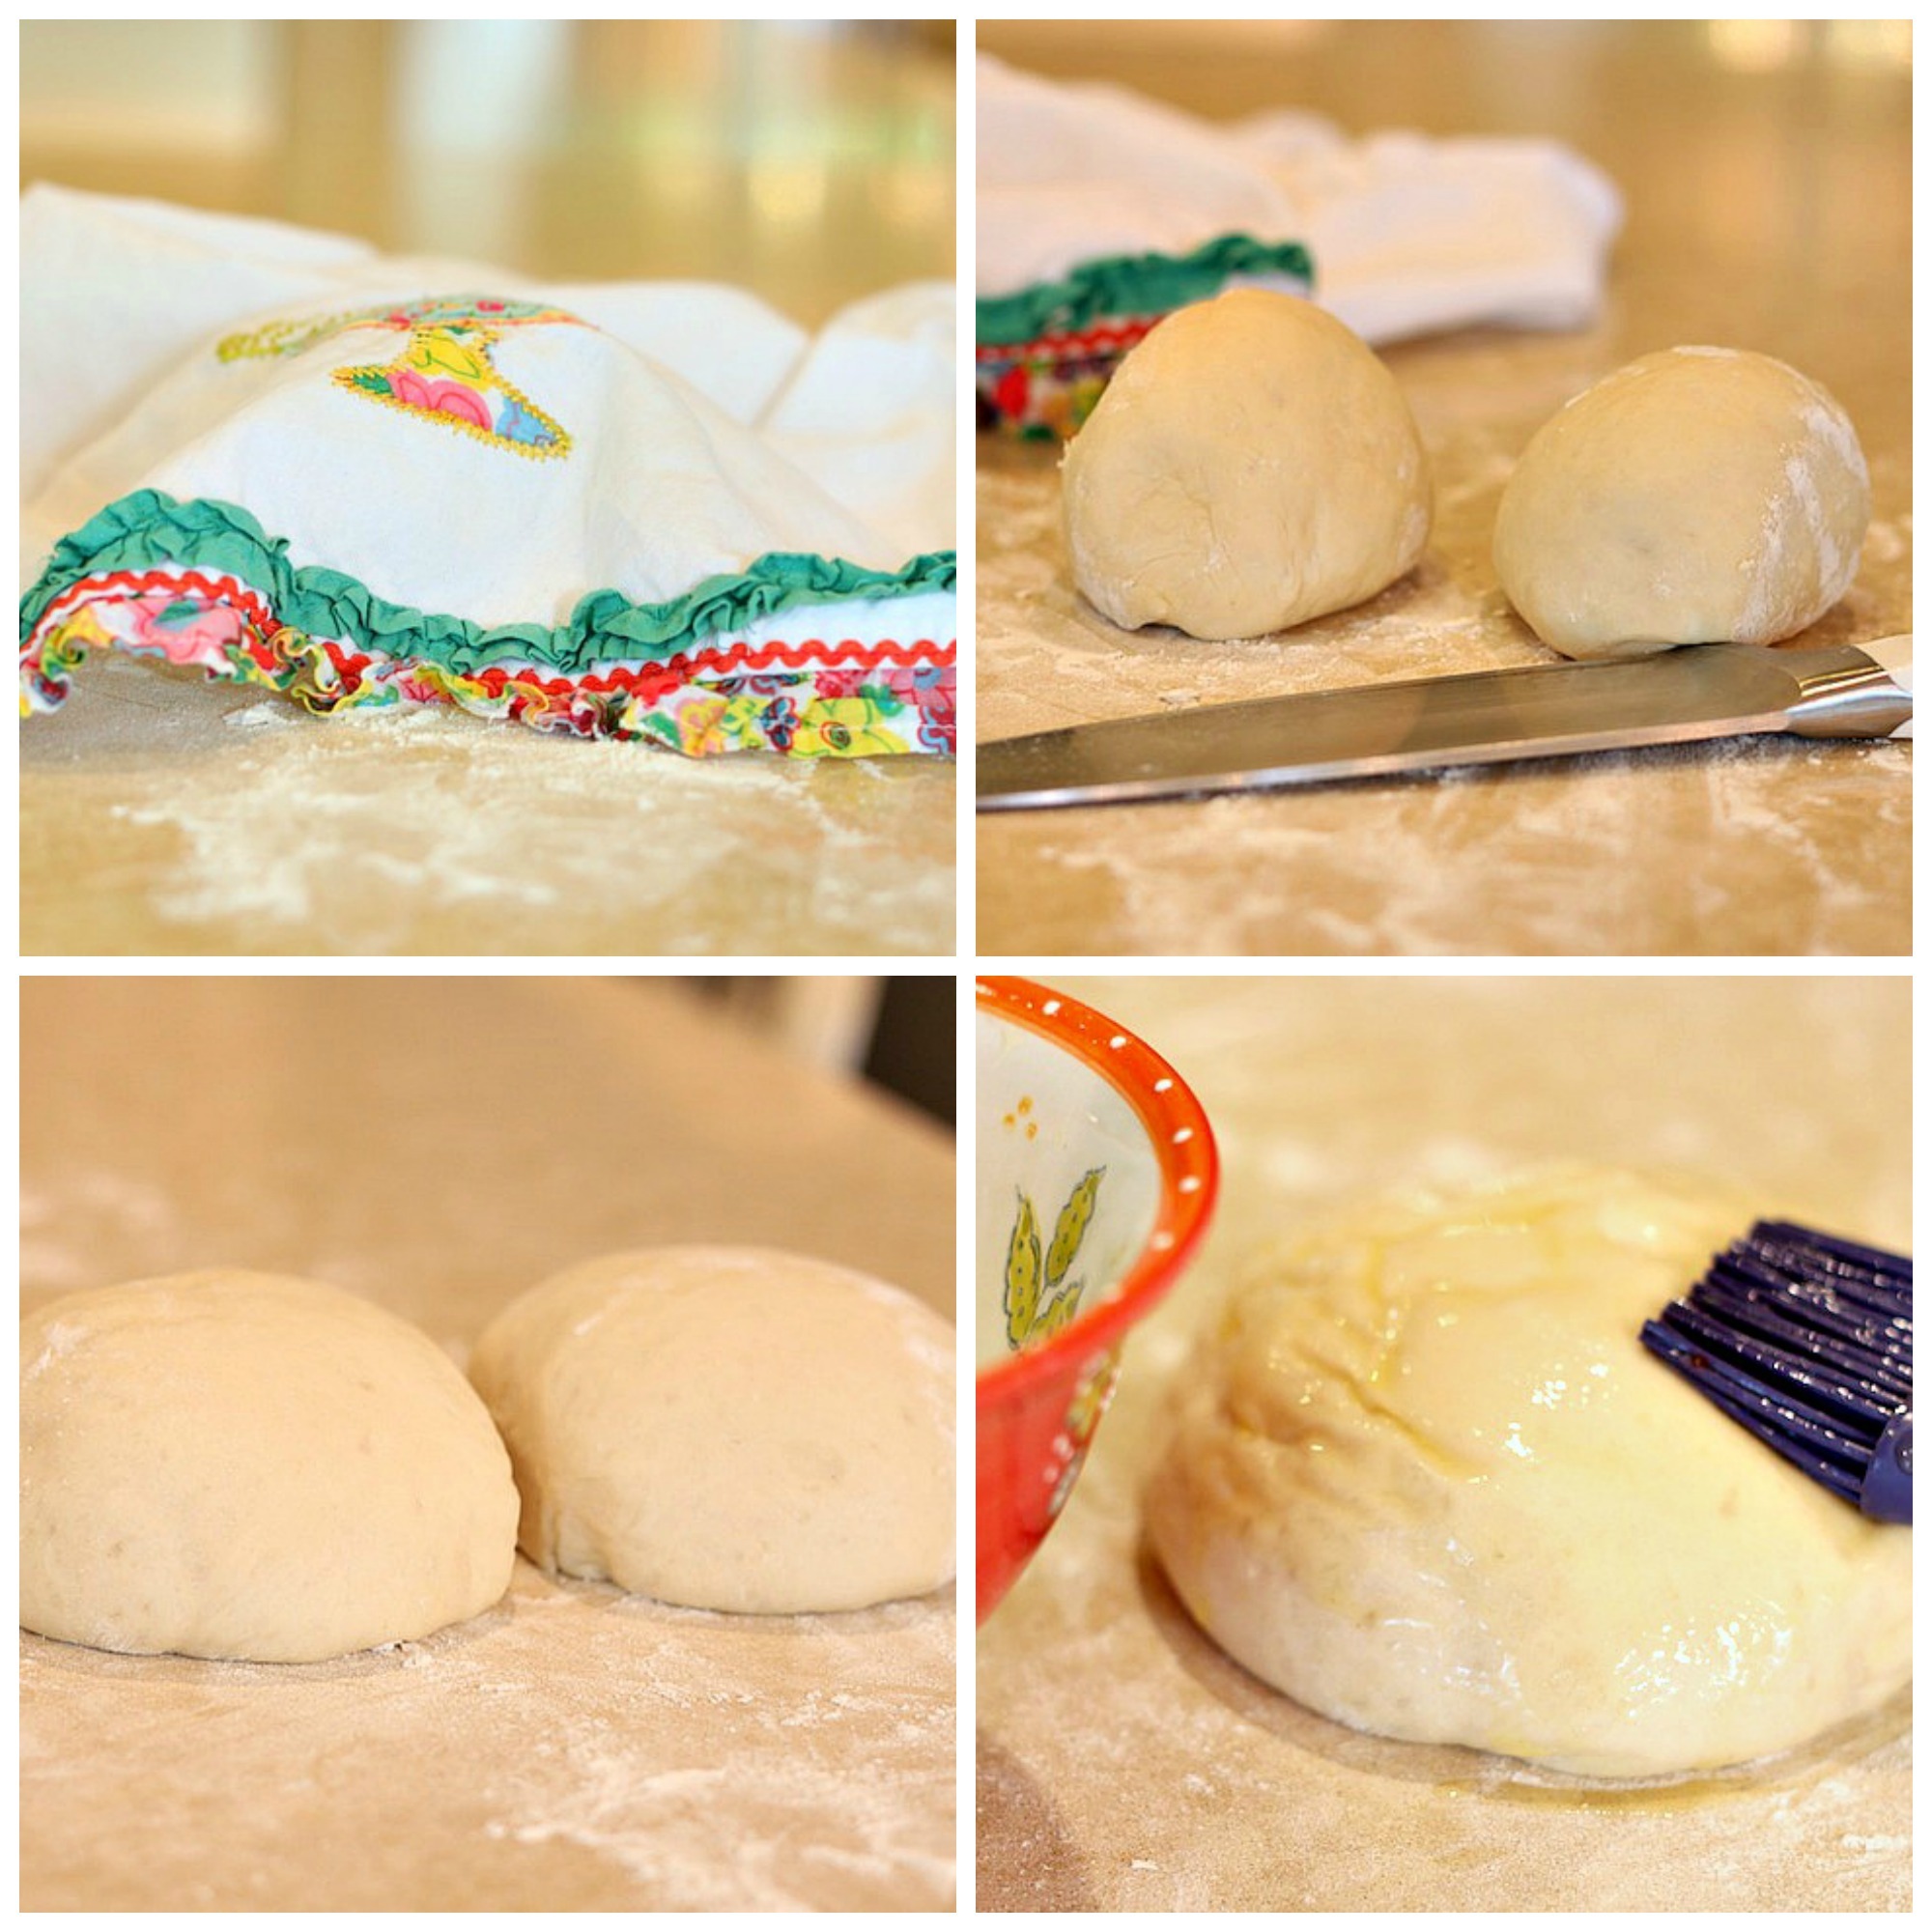 How to make Homemade Pizza Dough #homemadepizzadough #howtomakepizzadough #freshpizzadough